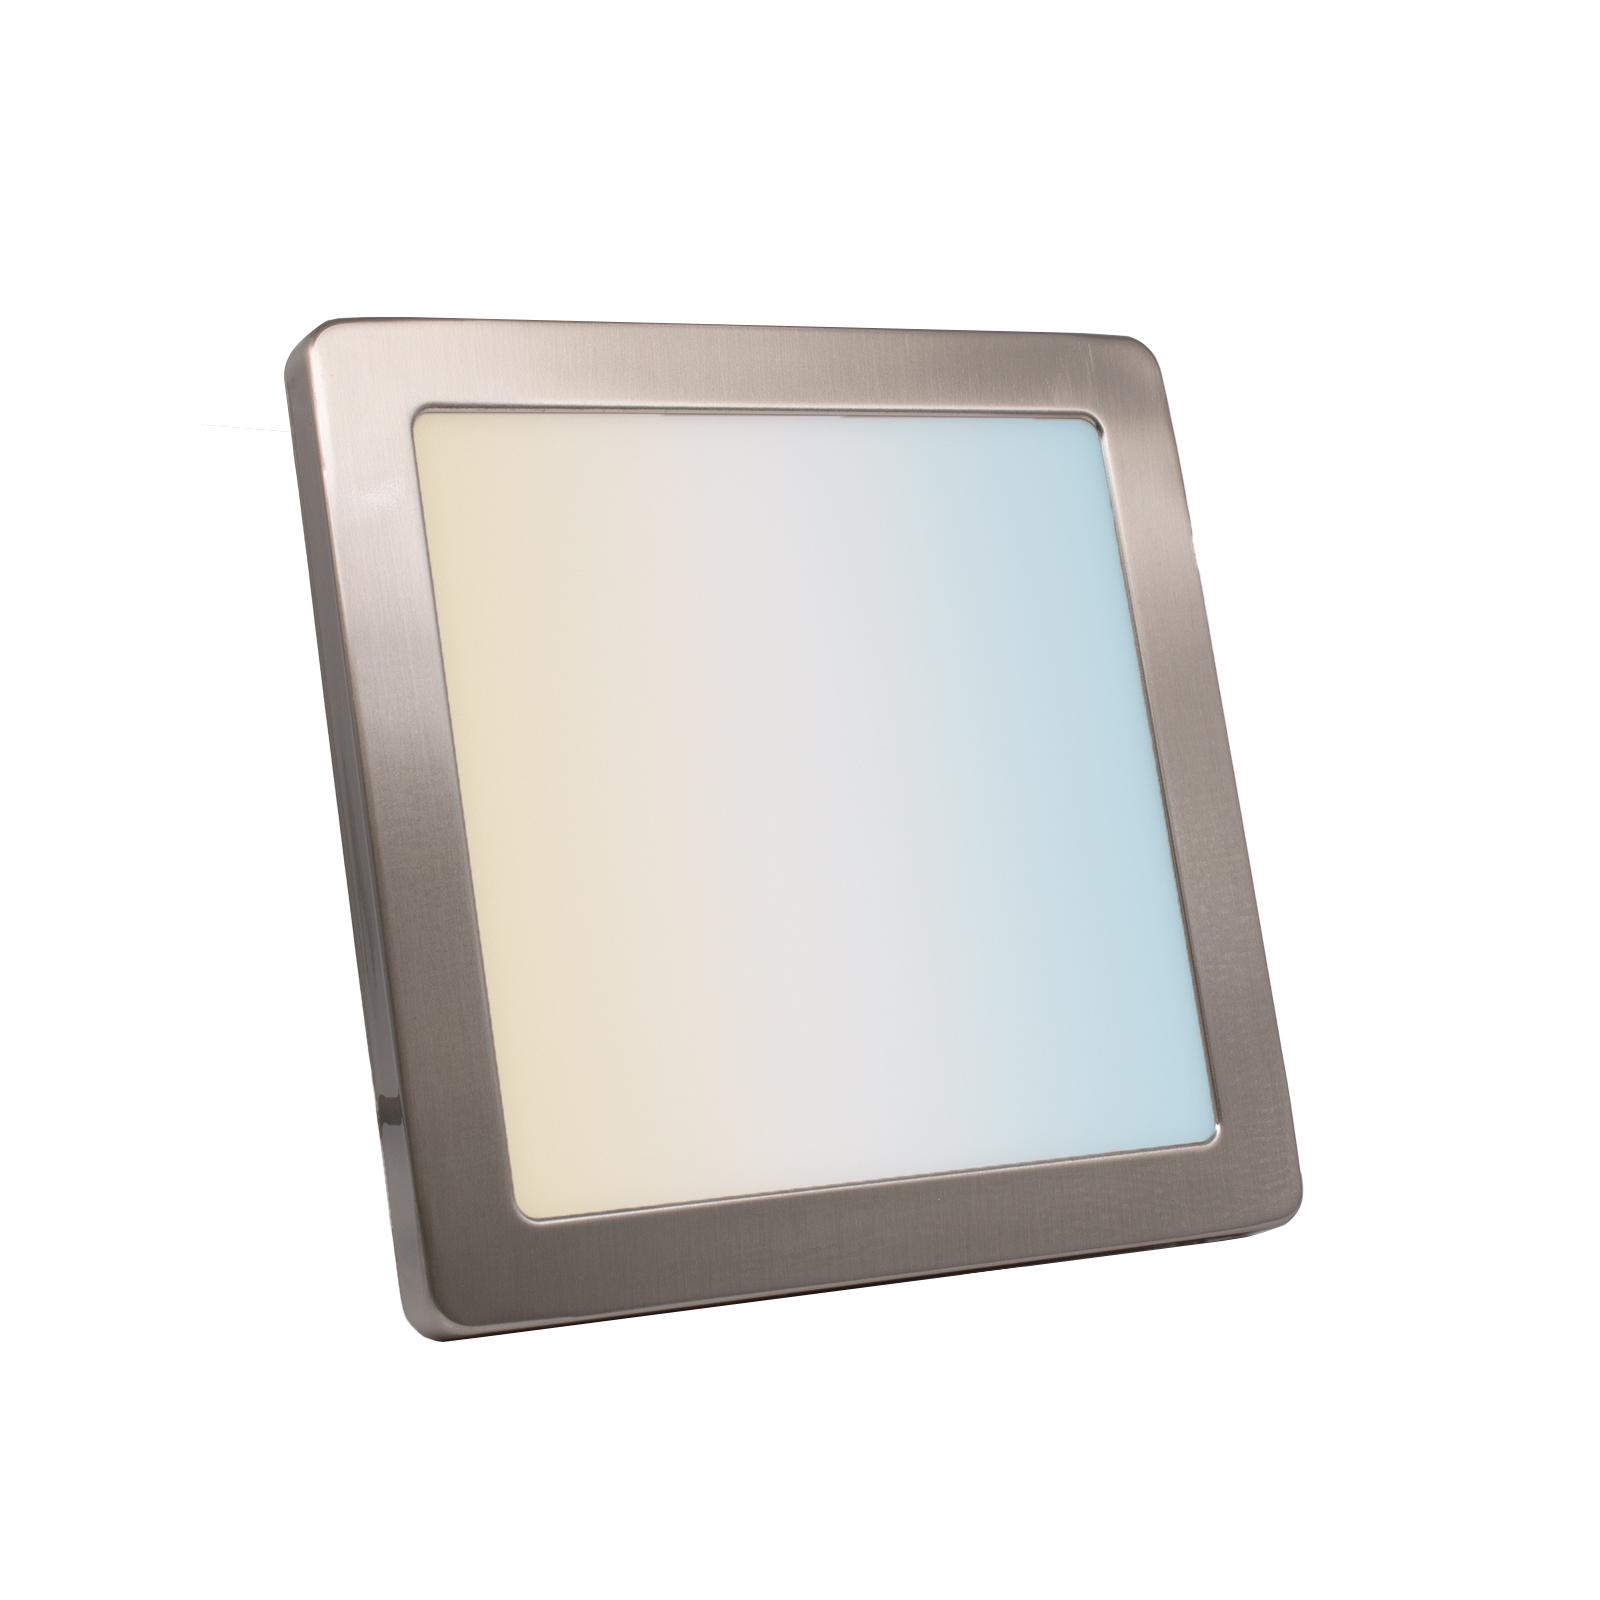 CCT LED Ein-Aufbaustrahler eckig silber 18W 217x217 mit Silber-farbigen Abdeckring